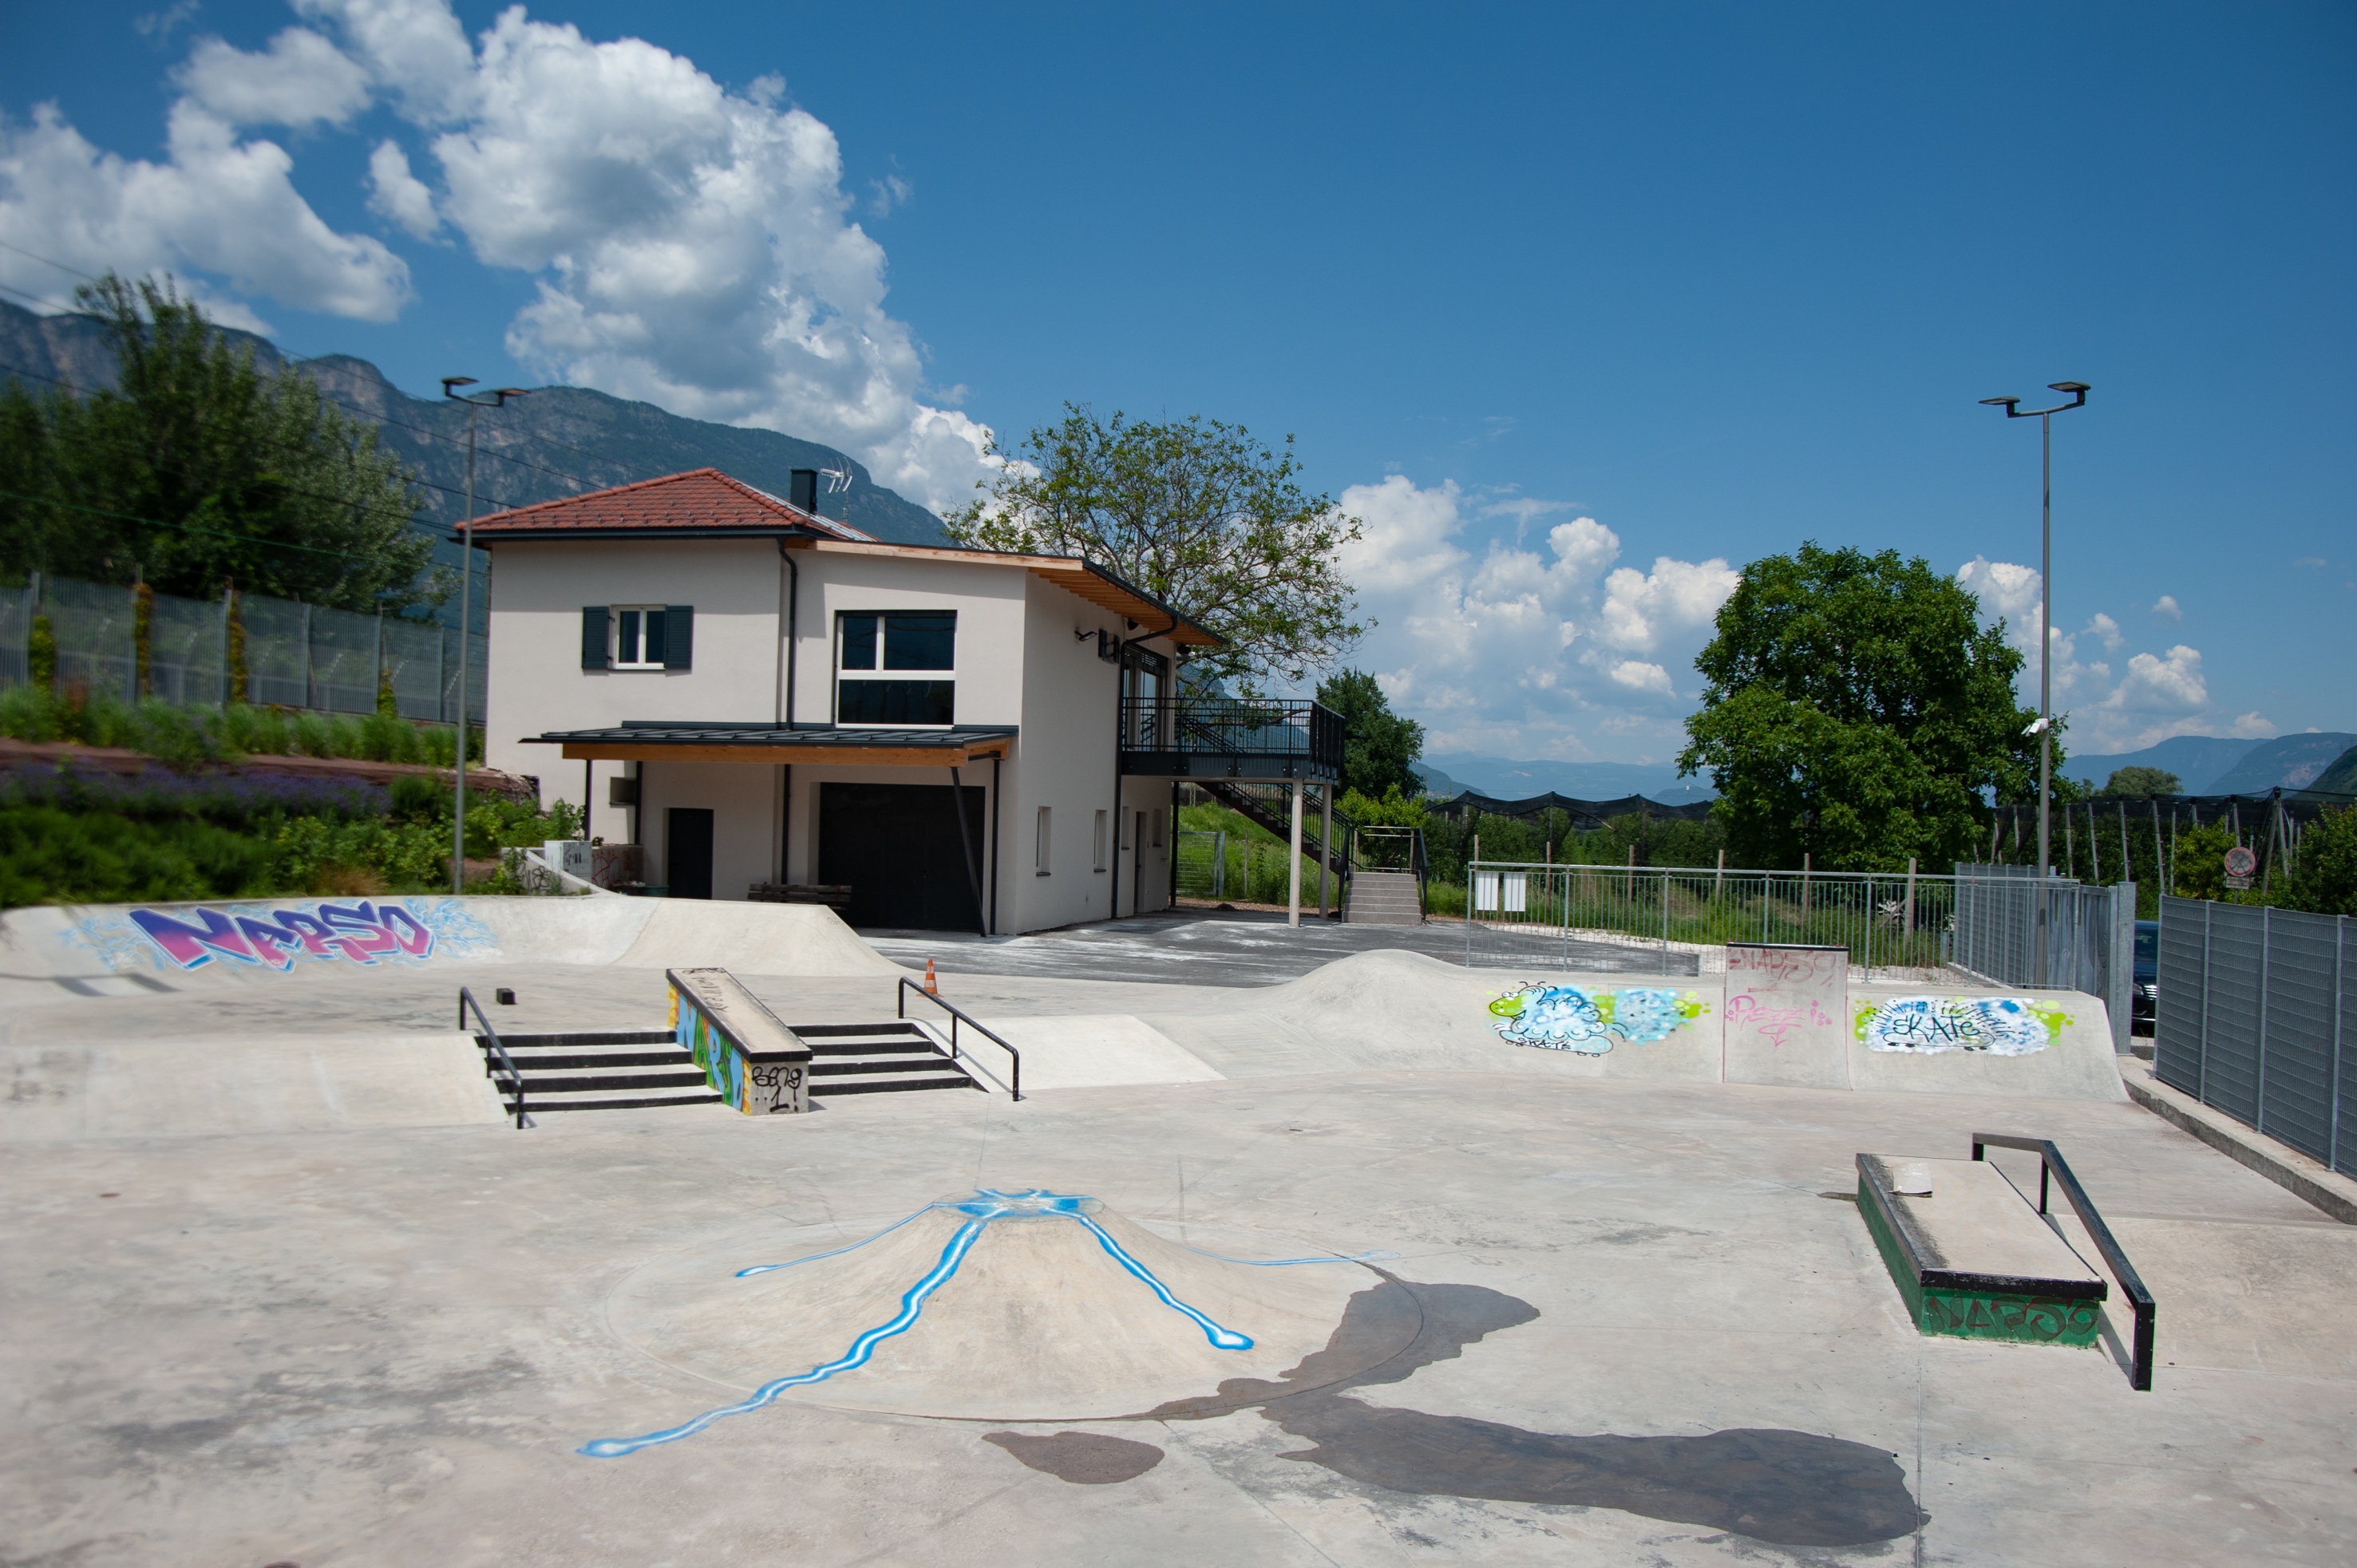 Erneut Austragungsort für einen regionalen Skate-Contest: Der neue Skatepark Unterland in Kurtinig wird sich am Samstag, 10. Juni 2023, mit Skatern füllen.